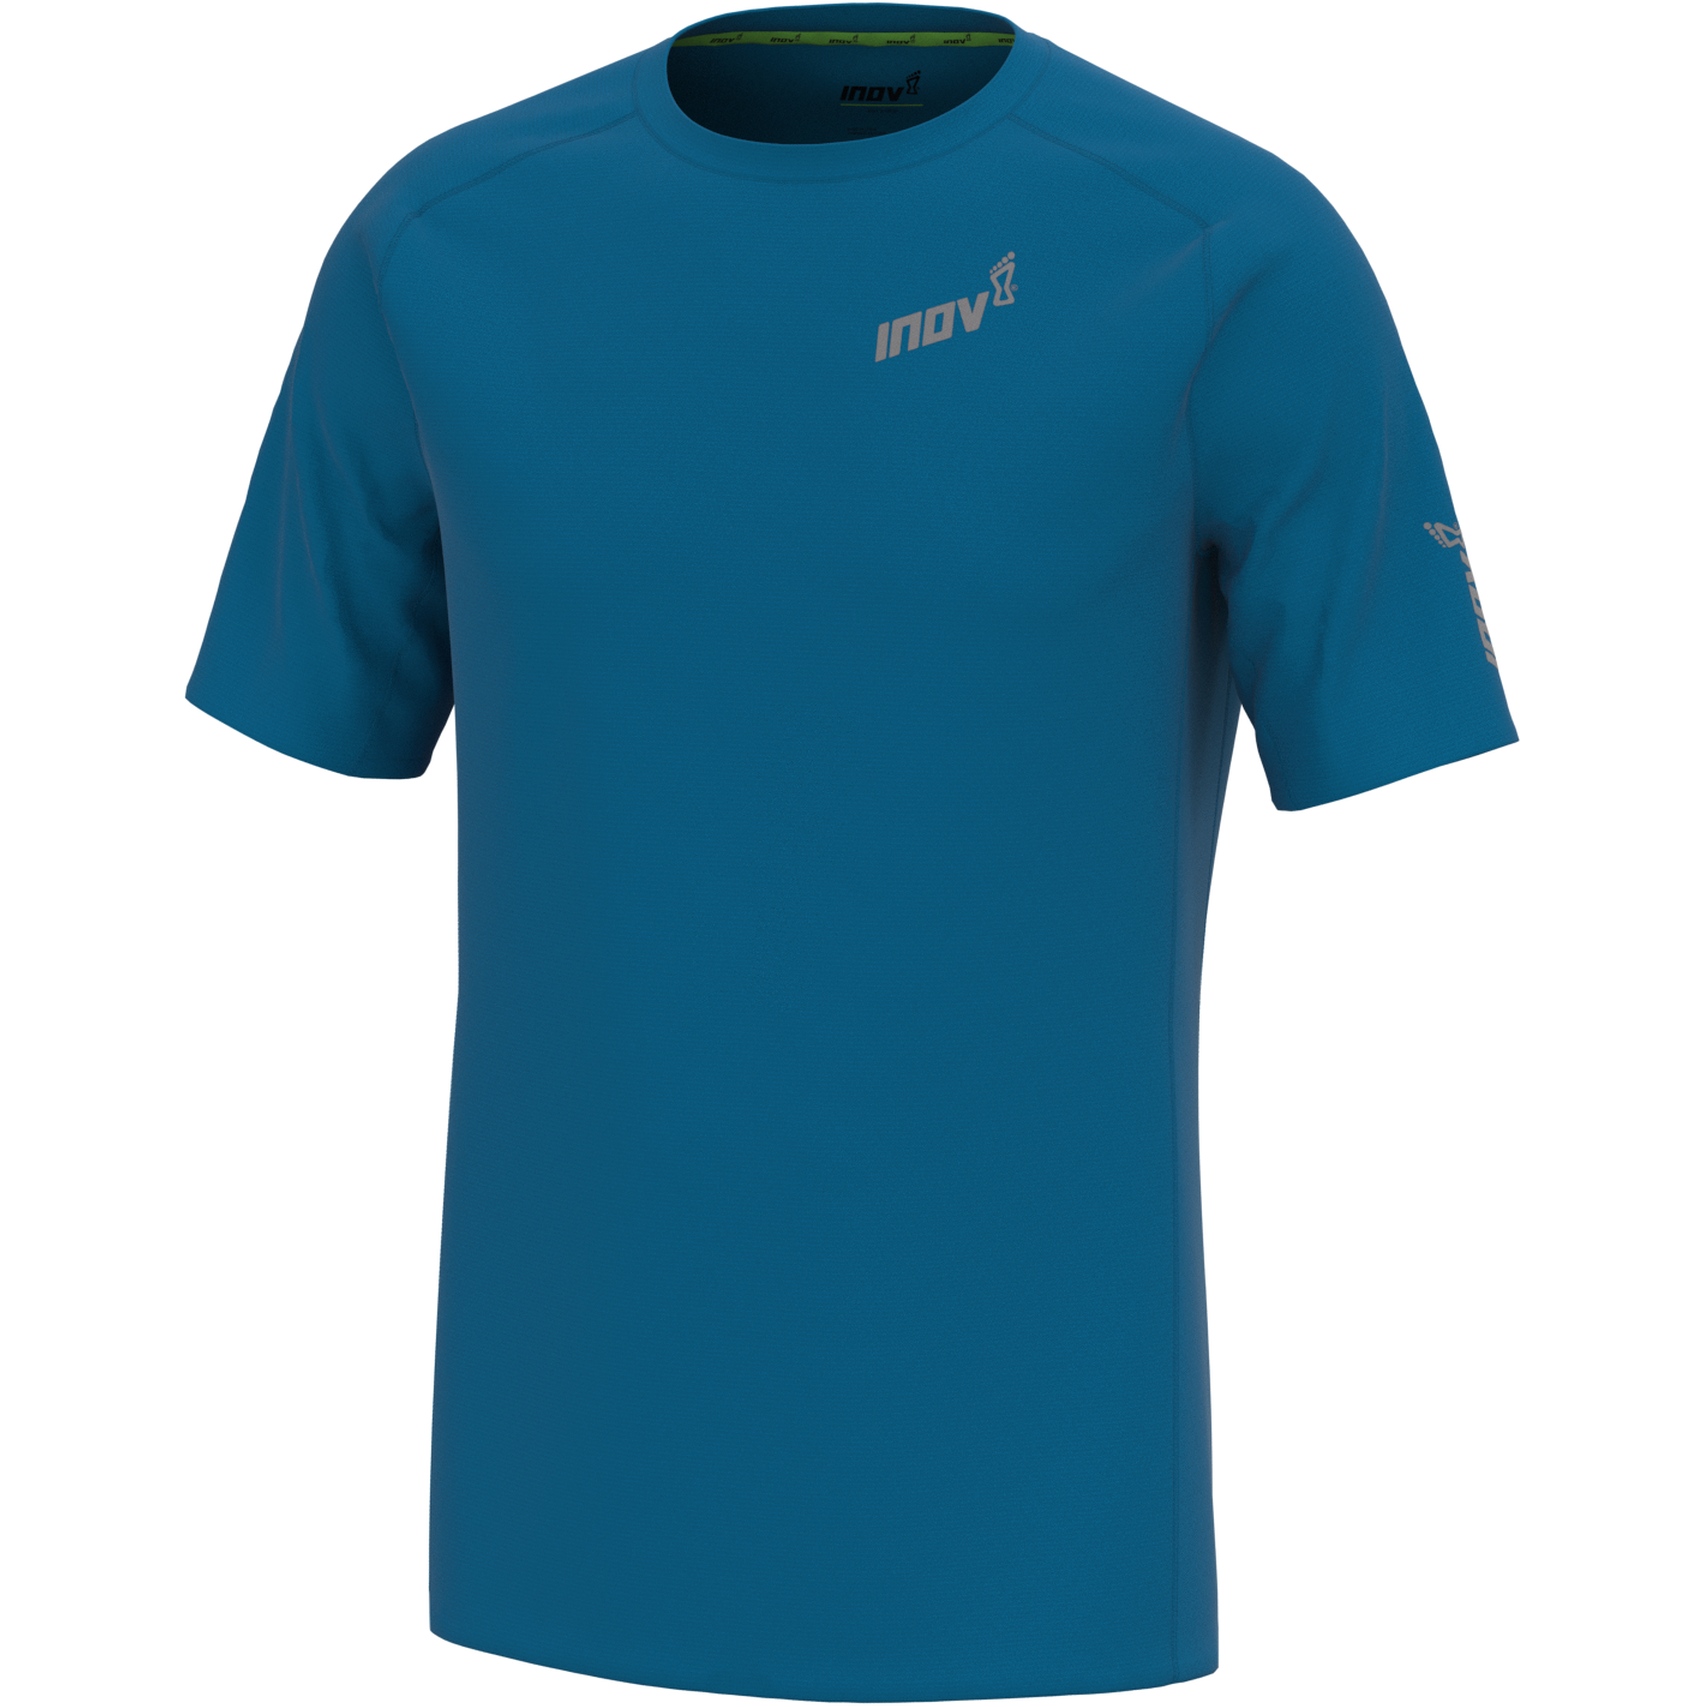 Produktbild von Inov-8 Base Elite Kurzarm Laufshirt - blau